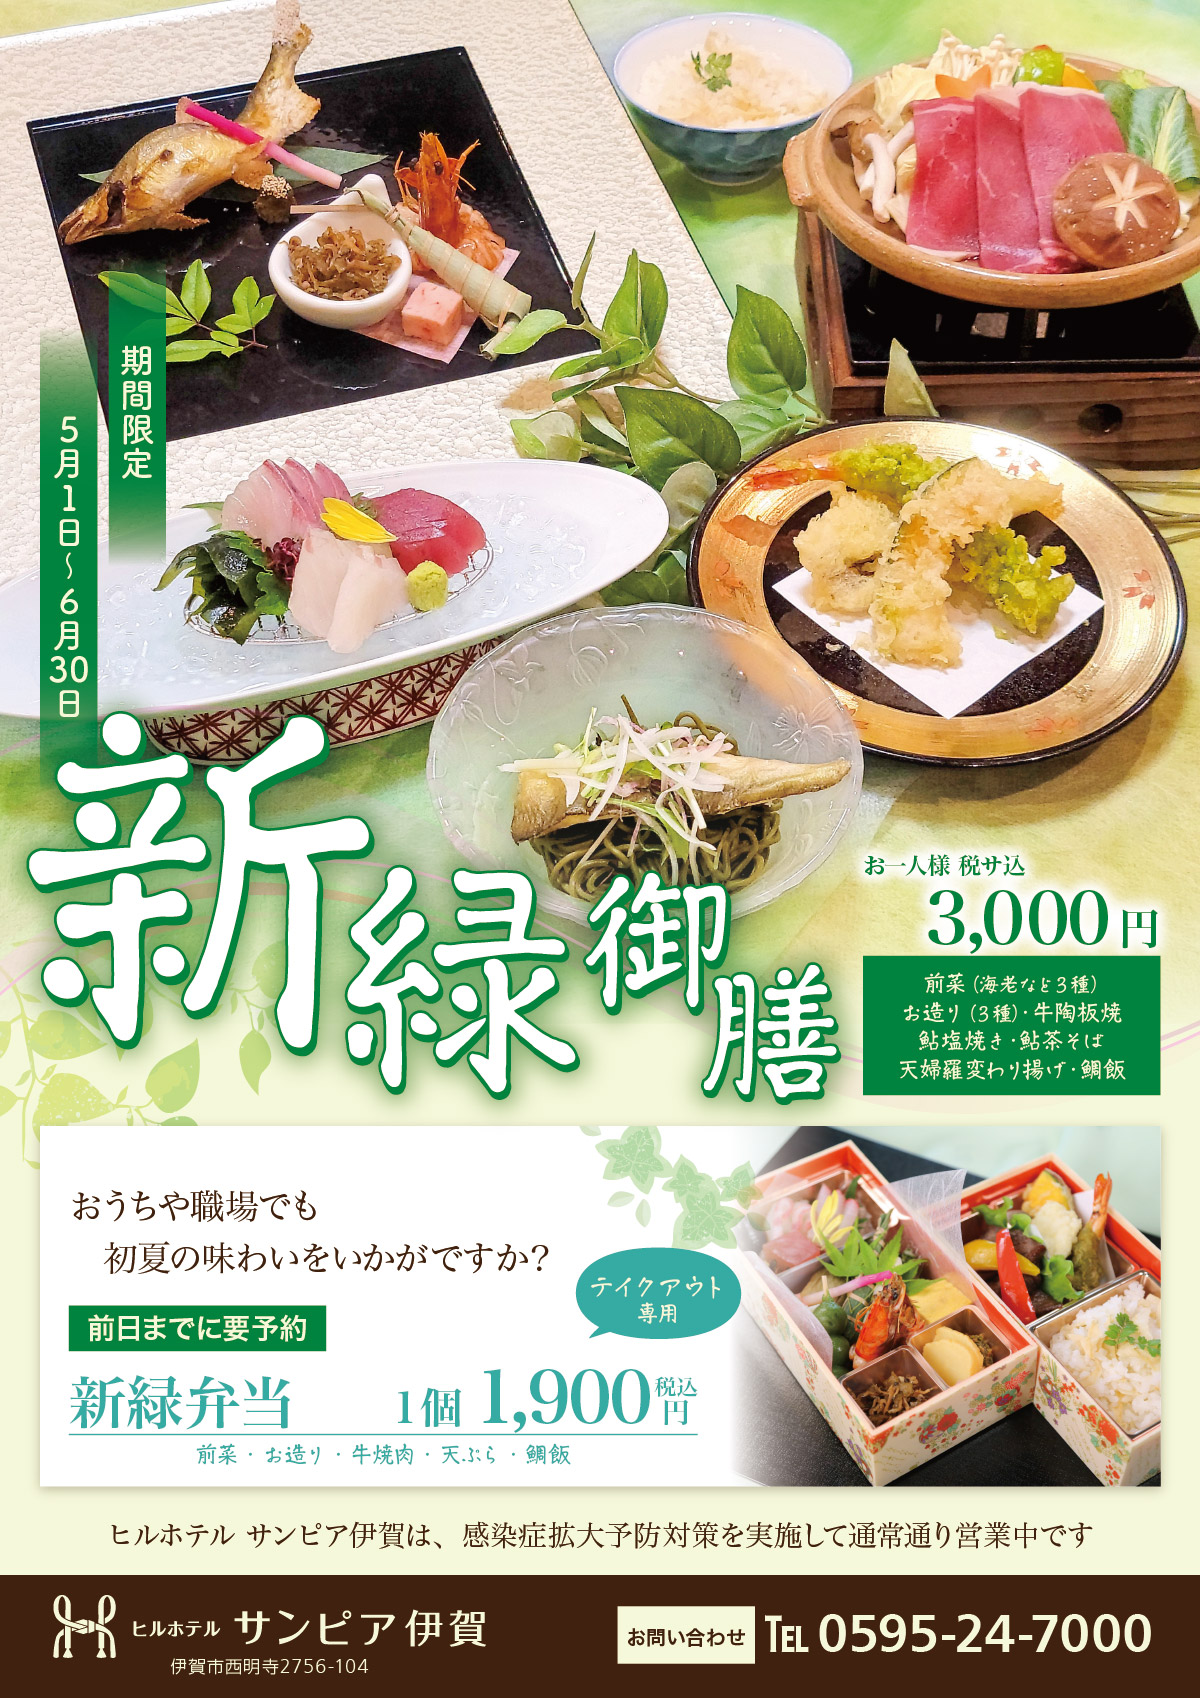 鮎など初夏の味わい「新緑御膳」。5月1日から6月30日までの期間限定。税サ込3,000円。